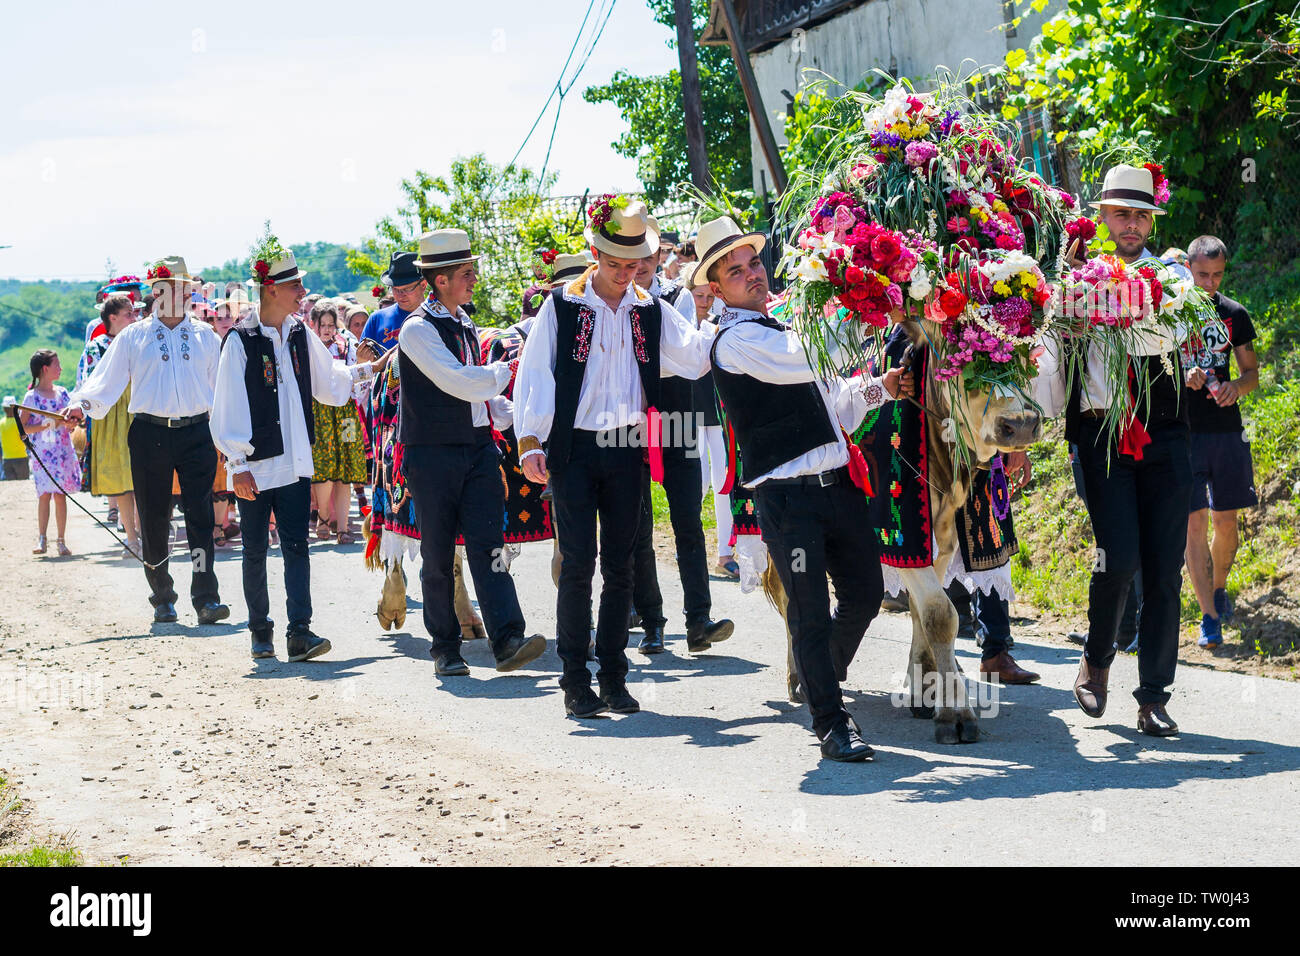 Batin, Cluj, Impanatul boului or instrutatul boului, traditional celebration Stock Photo